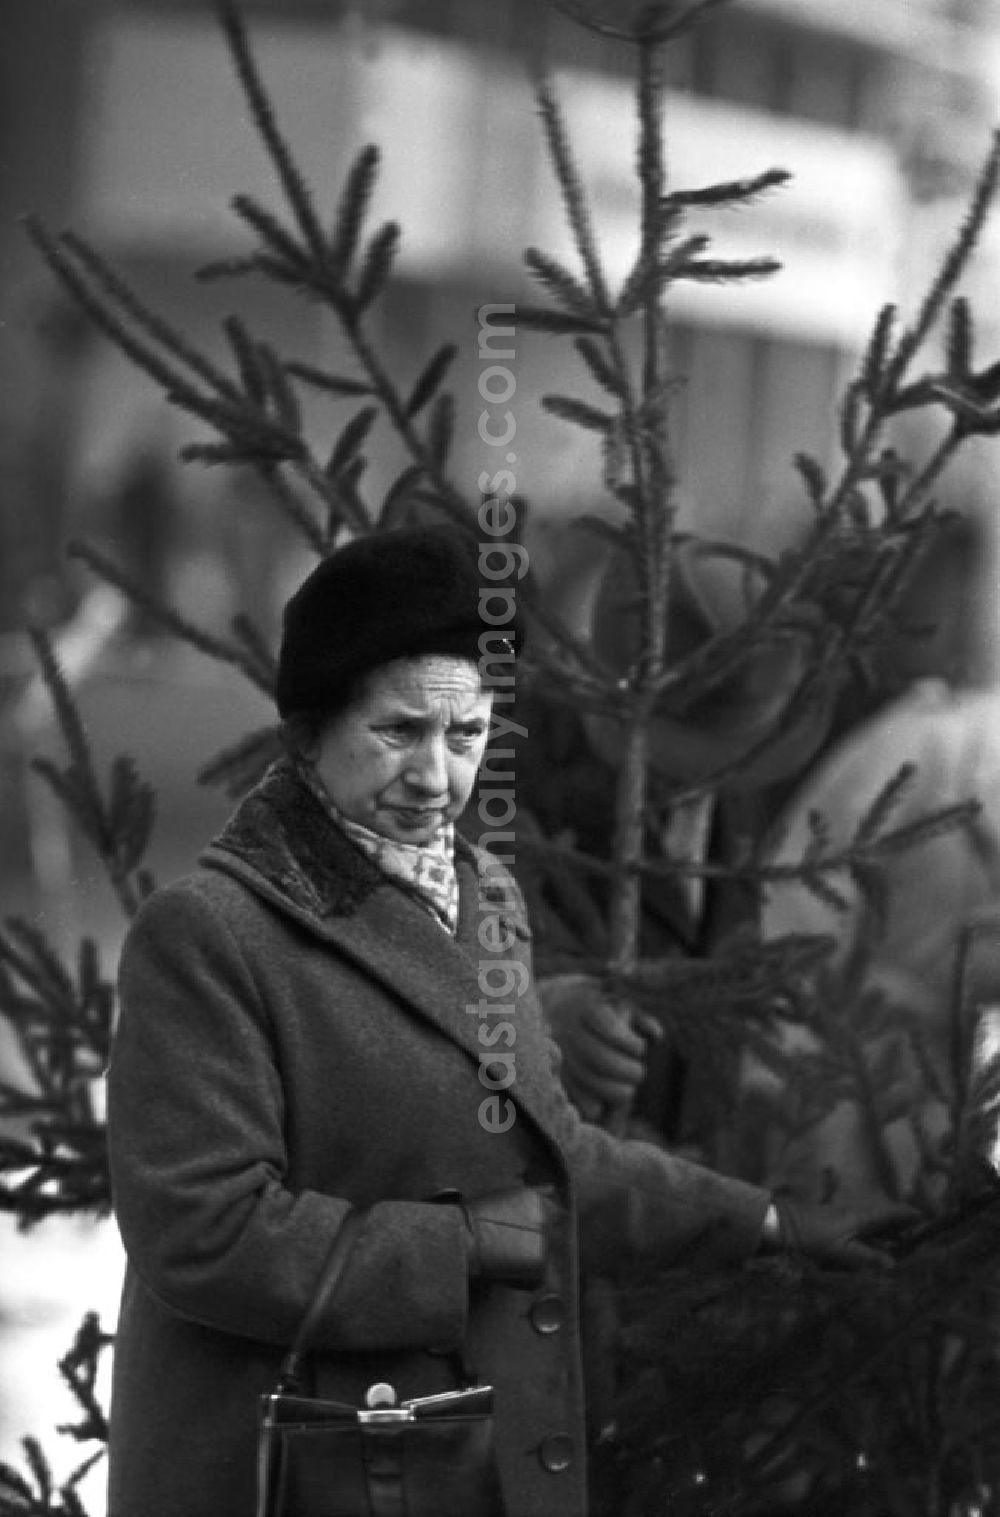 GDR image archive: Berlin - Eine Frau betrachtet beim Weihnachtsbaumverkauf einen eher spärlich bewachsenen Baum. Gut gewachsene Weihnachtsbäume mit vollen Zweigen gehörten in der DDR zur Mangelware - manche Familien kauften gleich zwei Bäume, um daraus einen schönen Baum mit vielen Zweigen zu konstruieren.